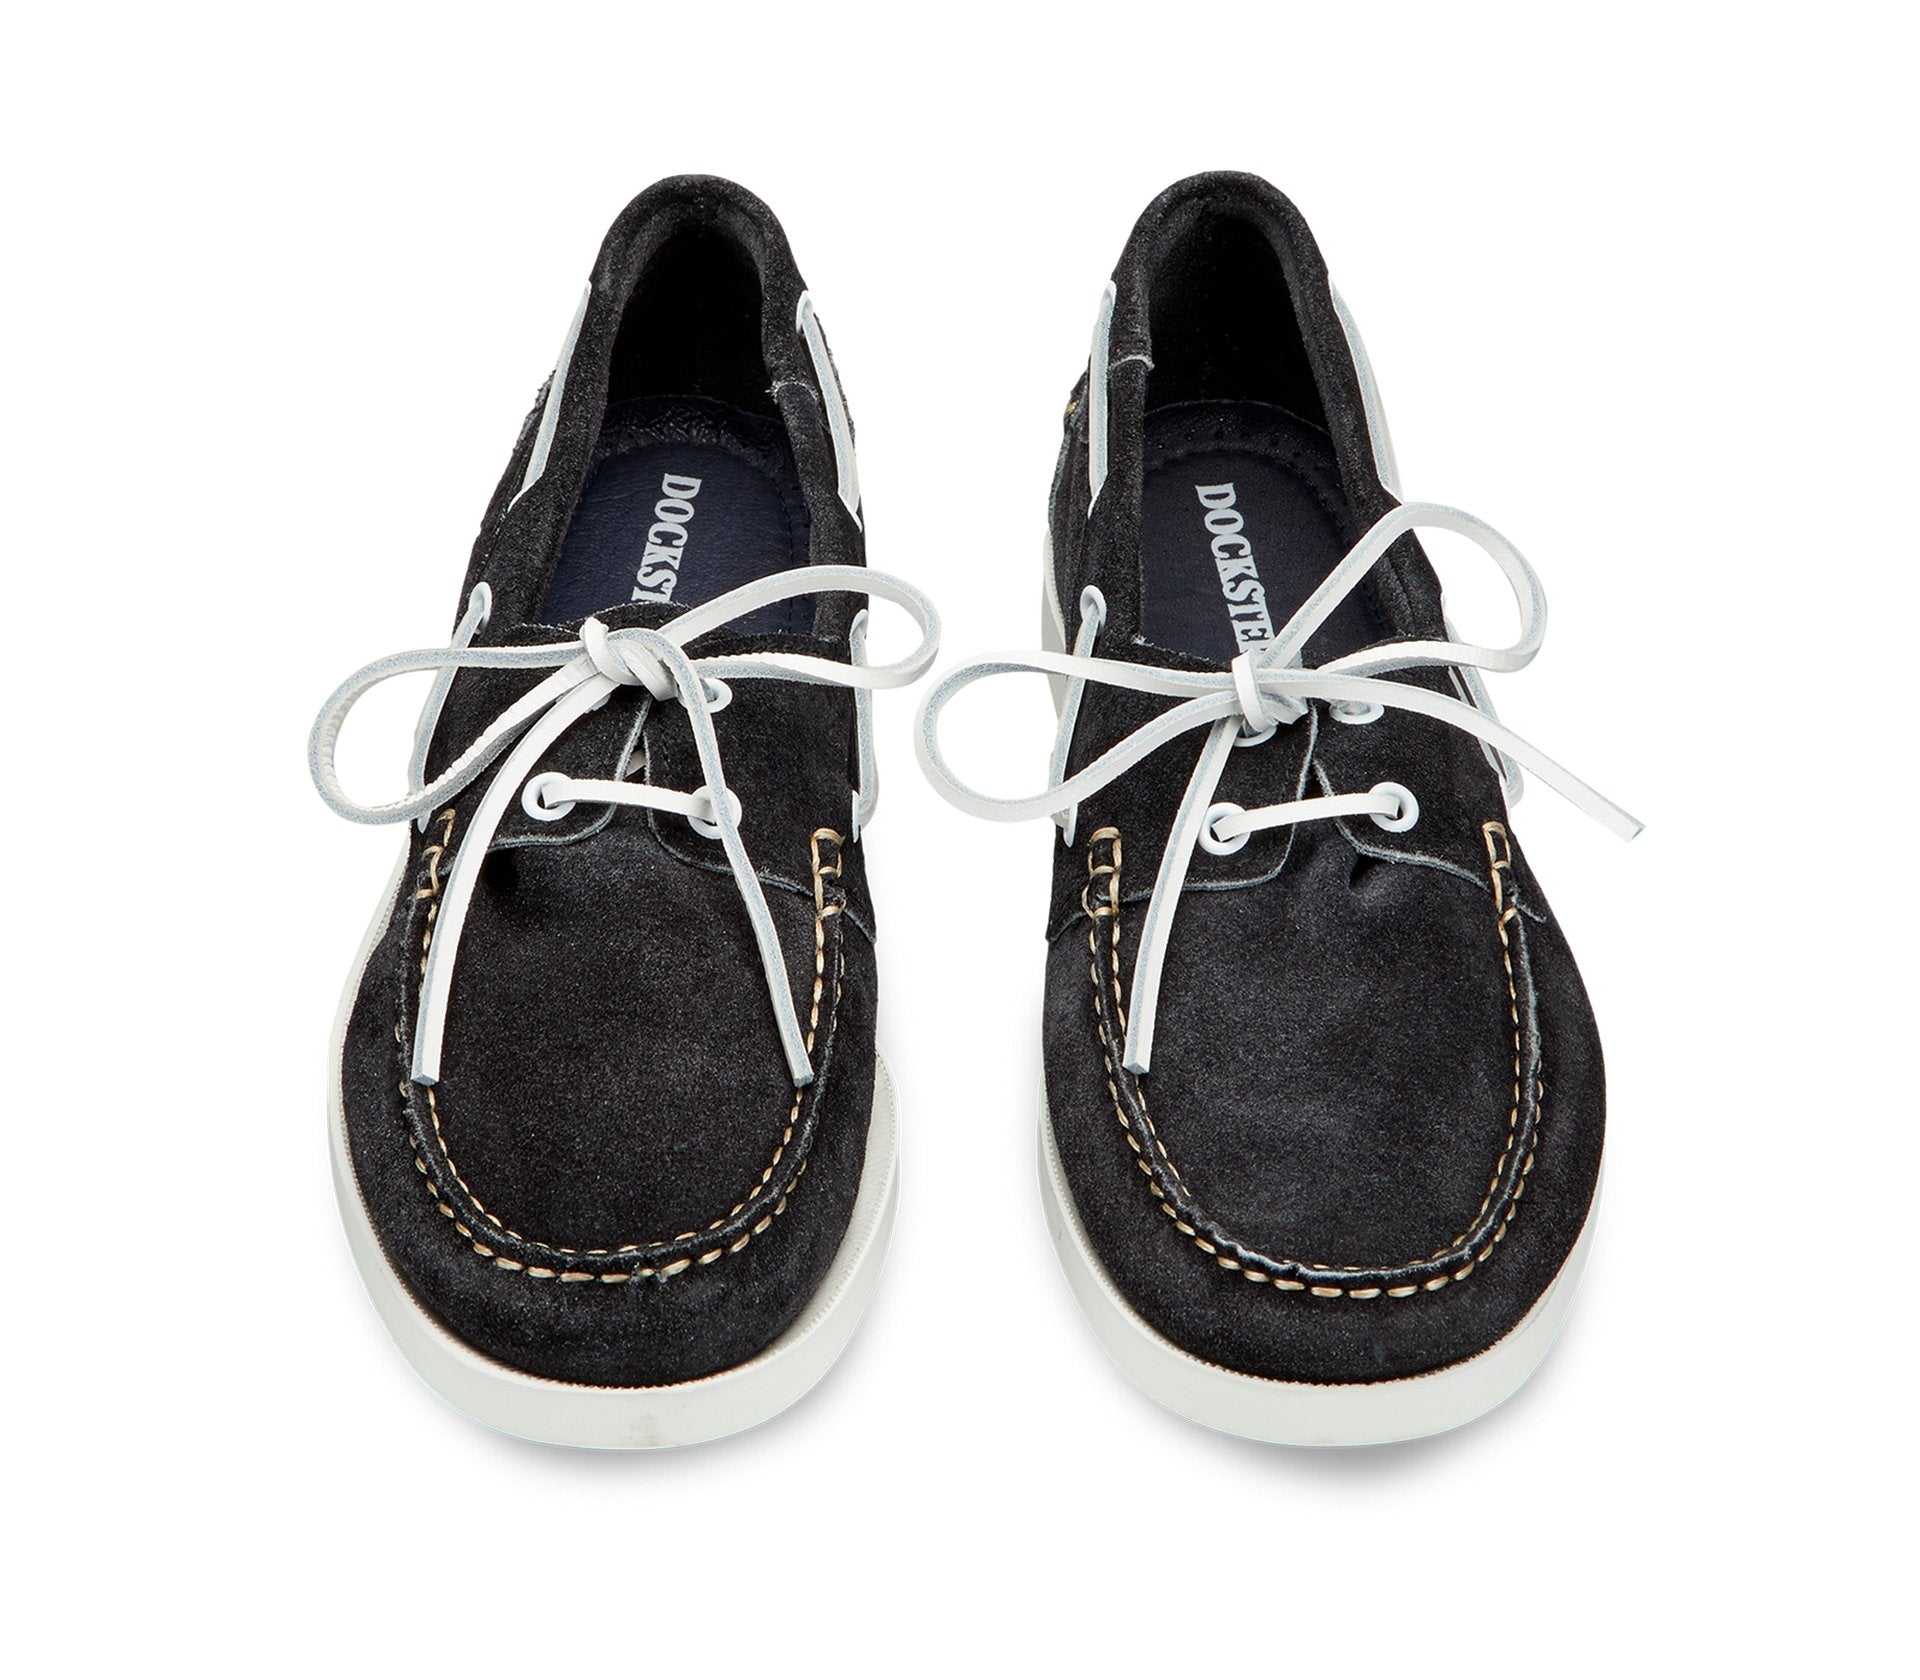 Black suede Docksteps boat shoes